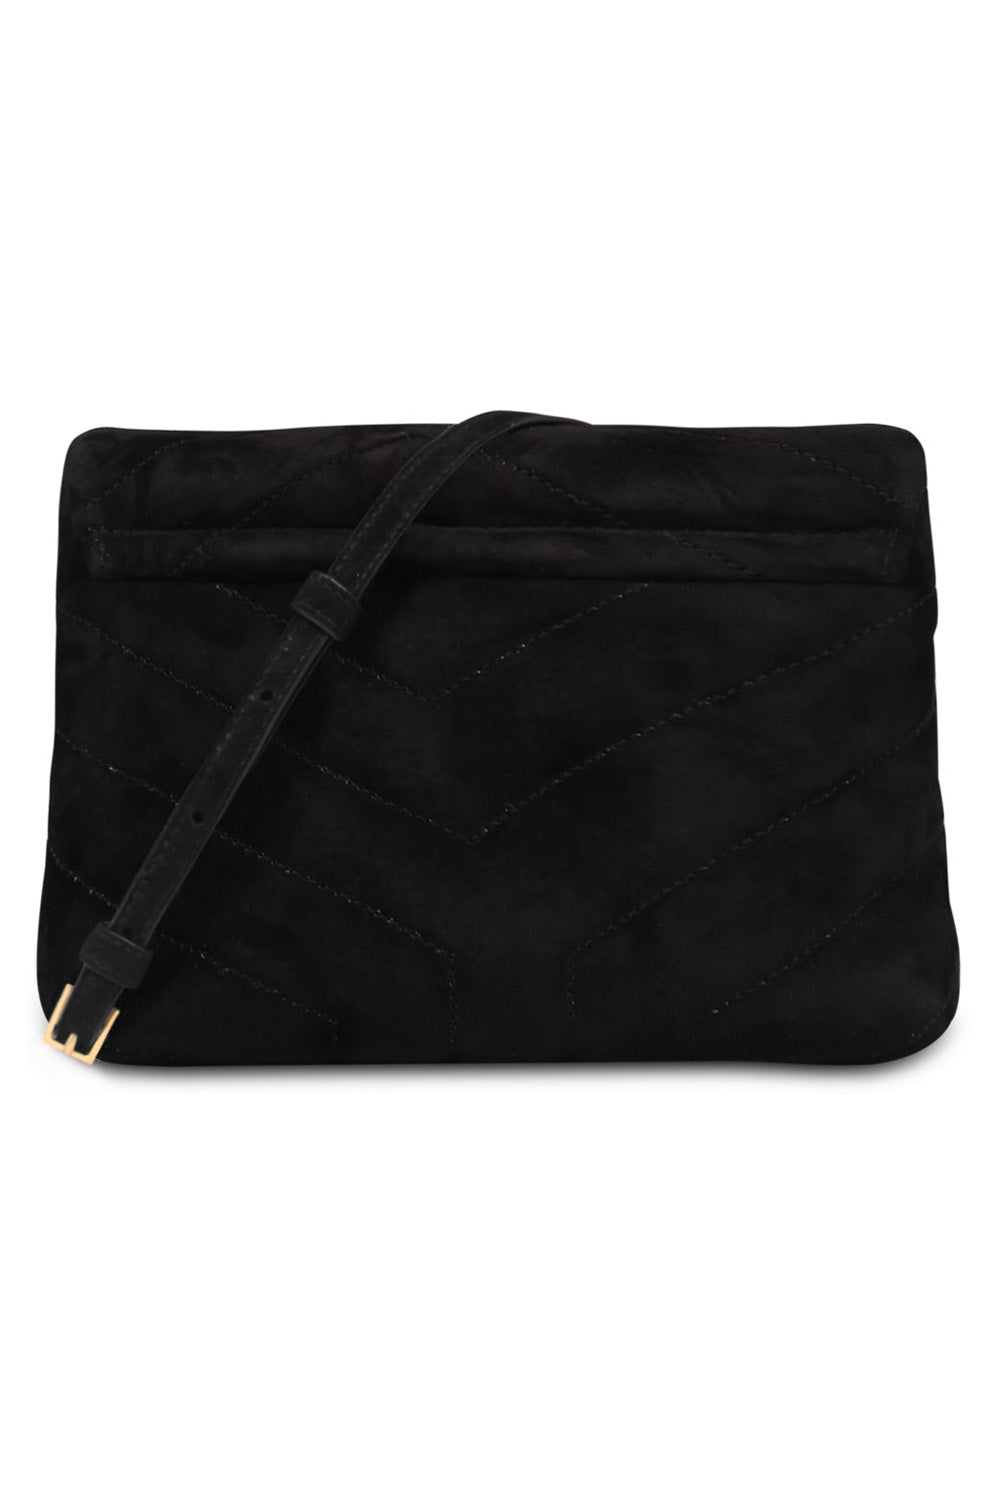 SAINT LAURENT BAGS BLACK LOULOU TOY FLAP BAG ADJUSTABLE STRAP | SUEDE BLACK/GOLD